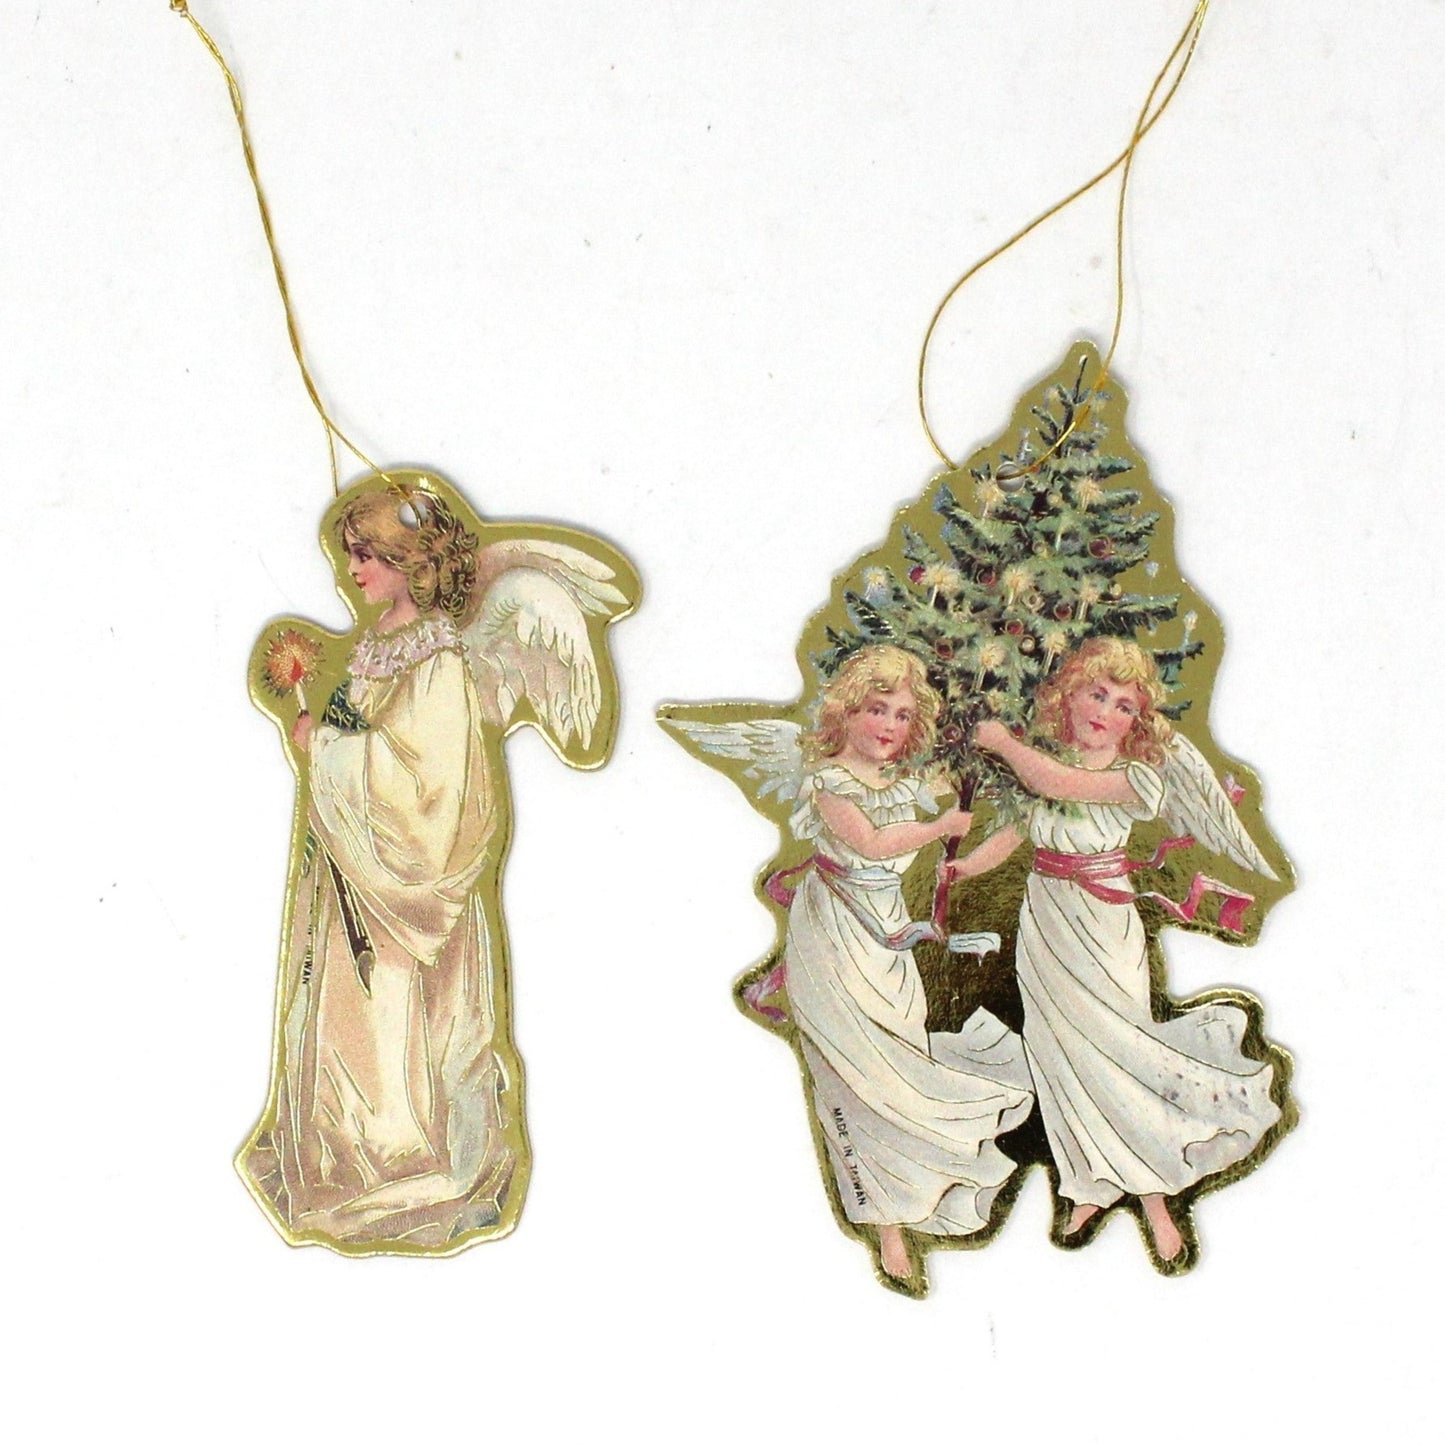 Ornament, Victorian Style, Merrimack Style Cardboard Die Cut Angel Ornaments, Set of 2, Vintage